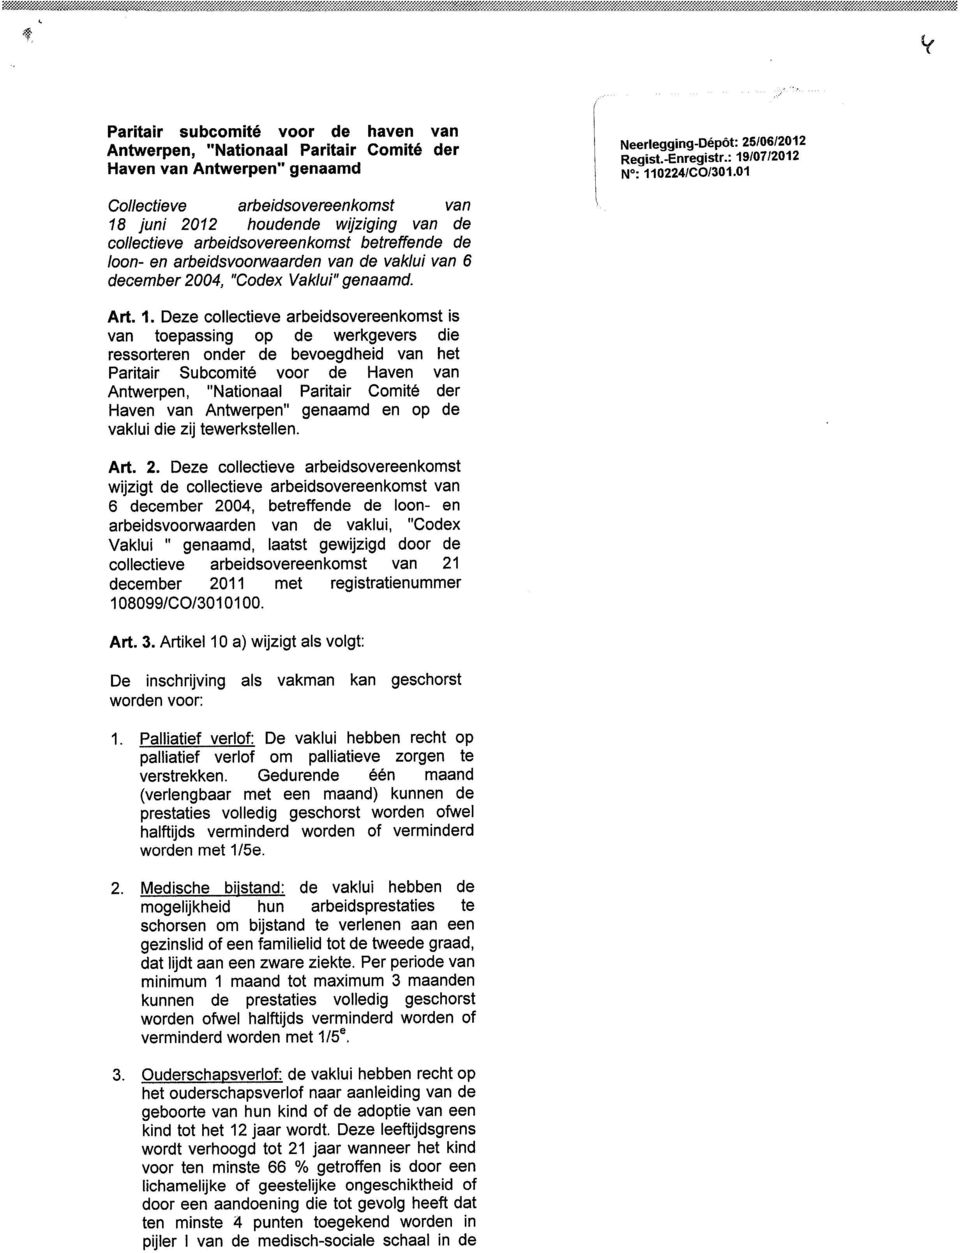 01 Collectieve arbeidsovereenkomst van 18 juni 2012 houdende wijziging van de collectieve arbeidsovereenkomst betreffende de bon- en arbeidsvoorwaarden van de vaklui van 6 december 2004, "Codex